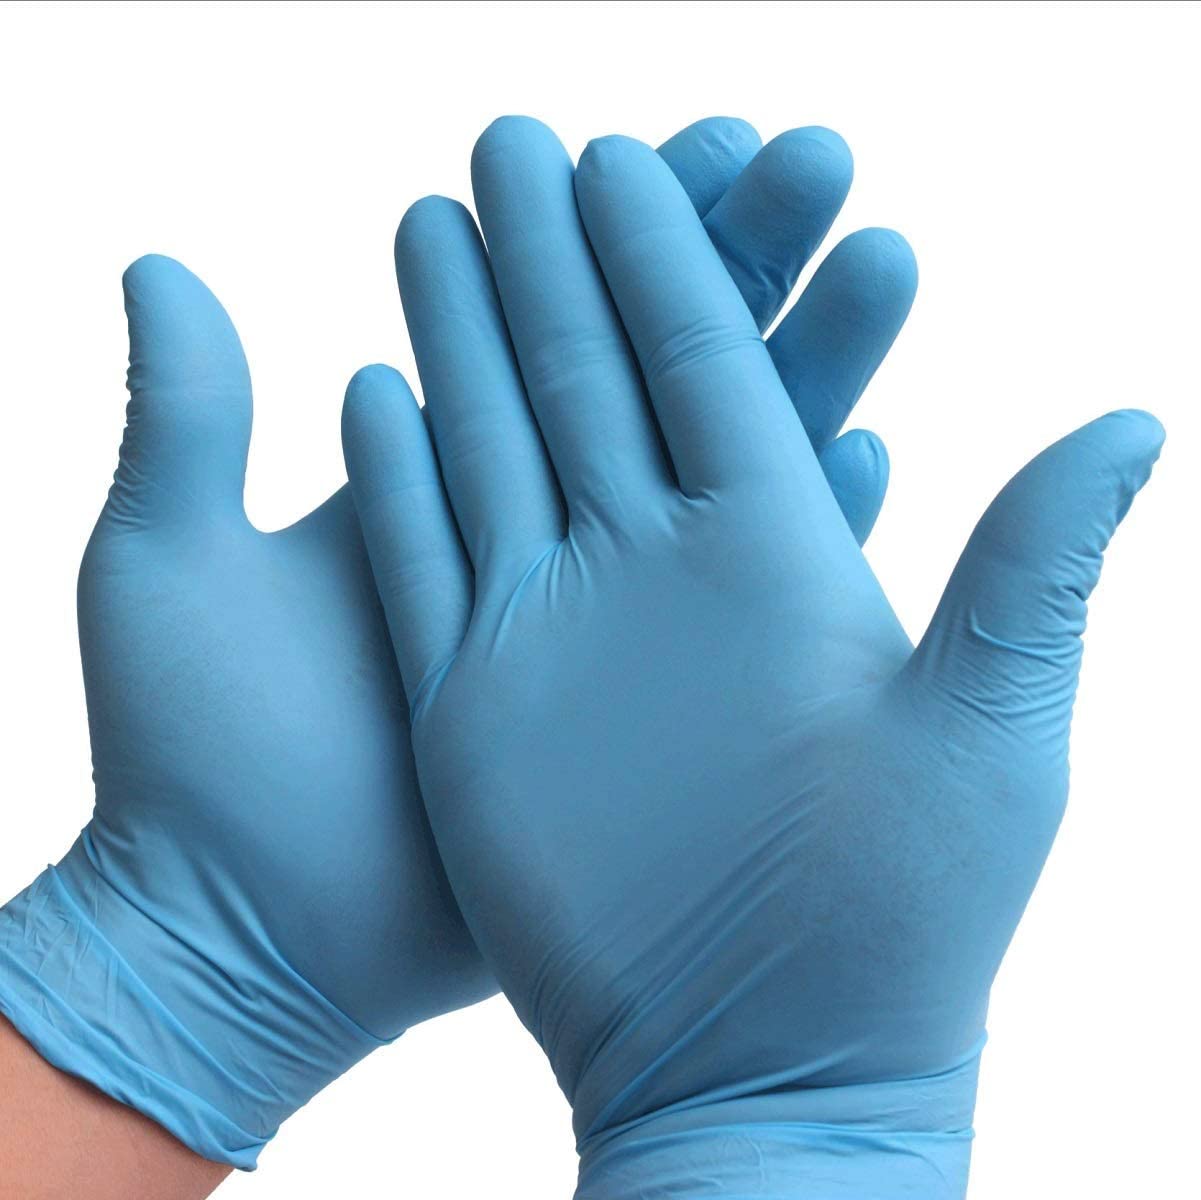 Gloves & Hand sanitizer